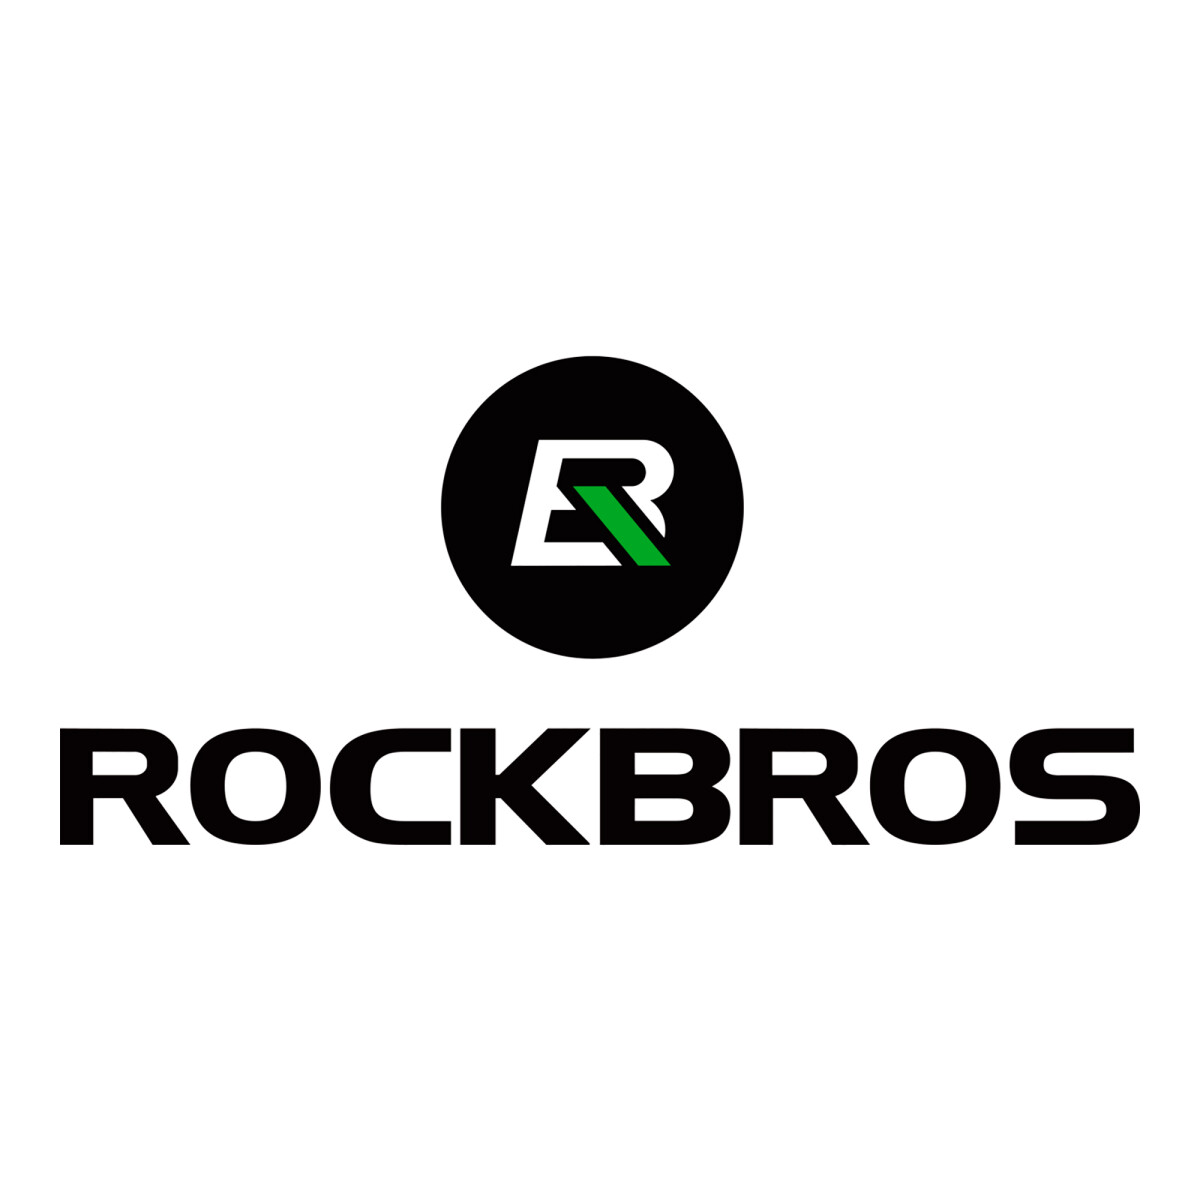 Rockbros - Camiseta de Ciclismo Manga Corta RK1009 - Respirable. Cintas Reflectivas. - 001 